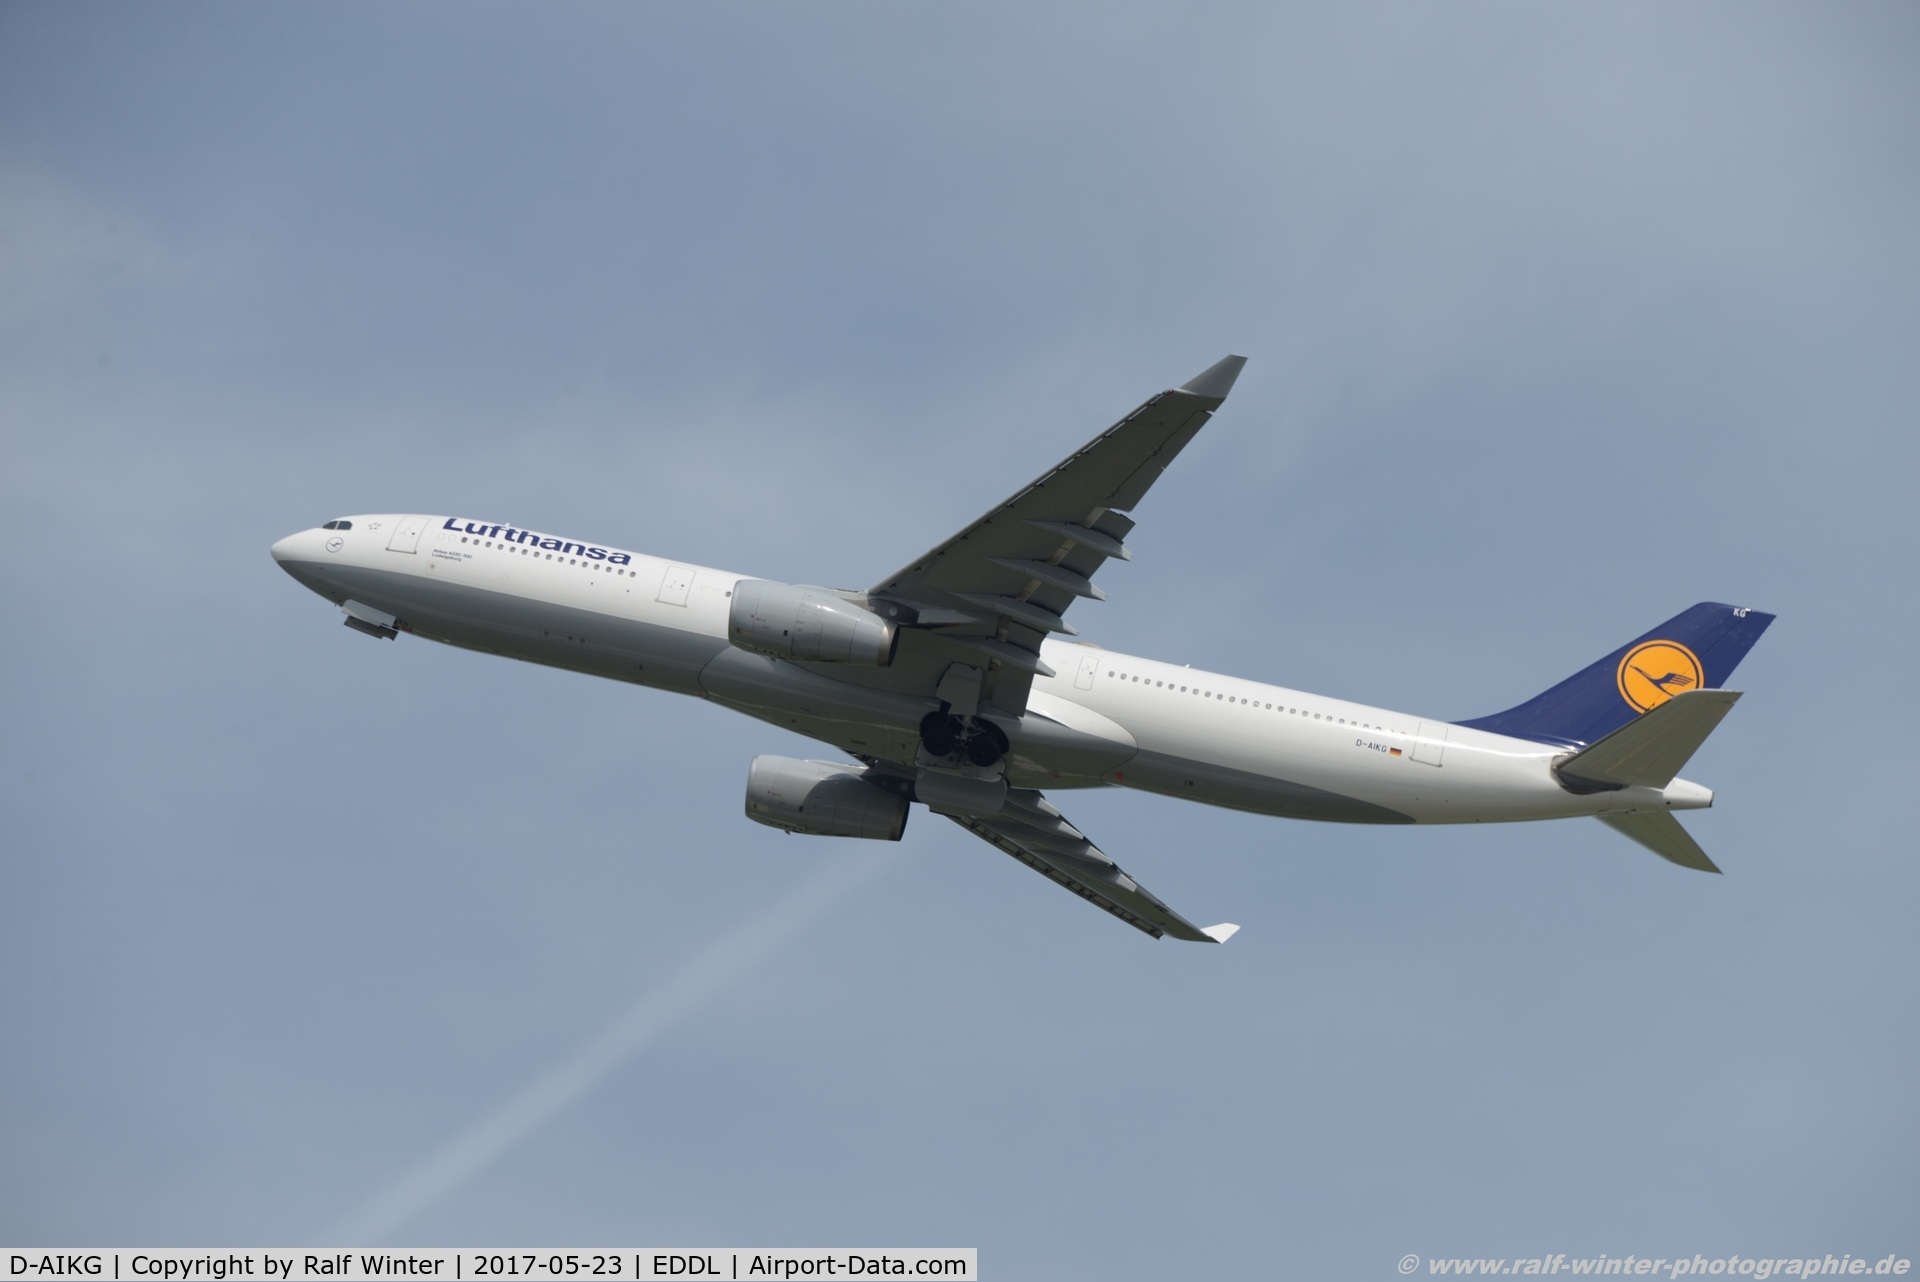 D-AIKG, 2005 Airbus A330-343X C/N 645, Airbus A330-343 - LH DLH Lufthansa 'Ludwigsburg' - 645 - D-AIKG - 23.05.2017 - DUS